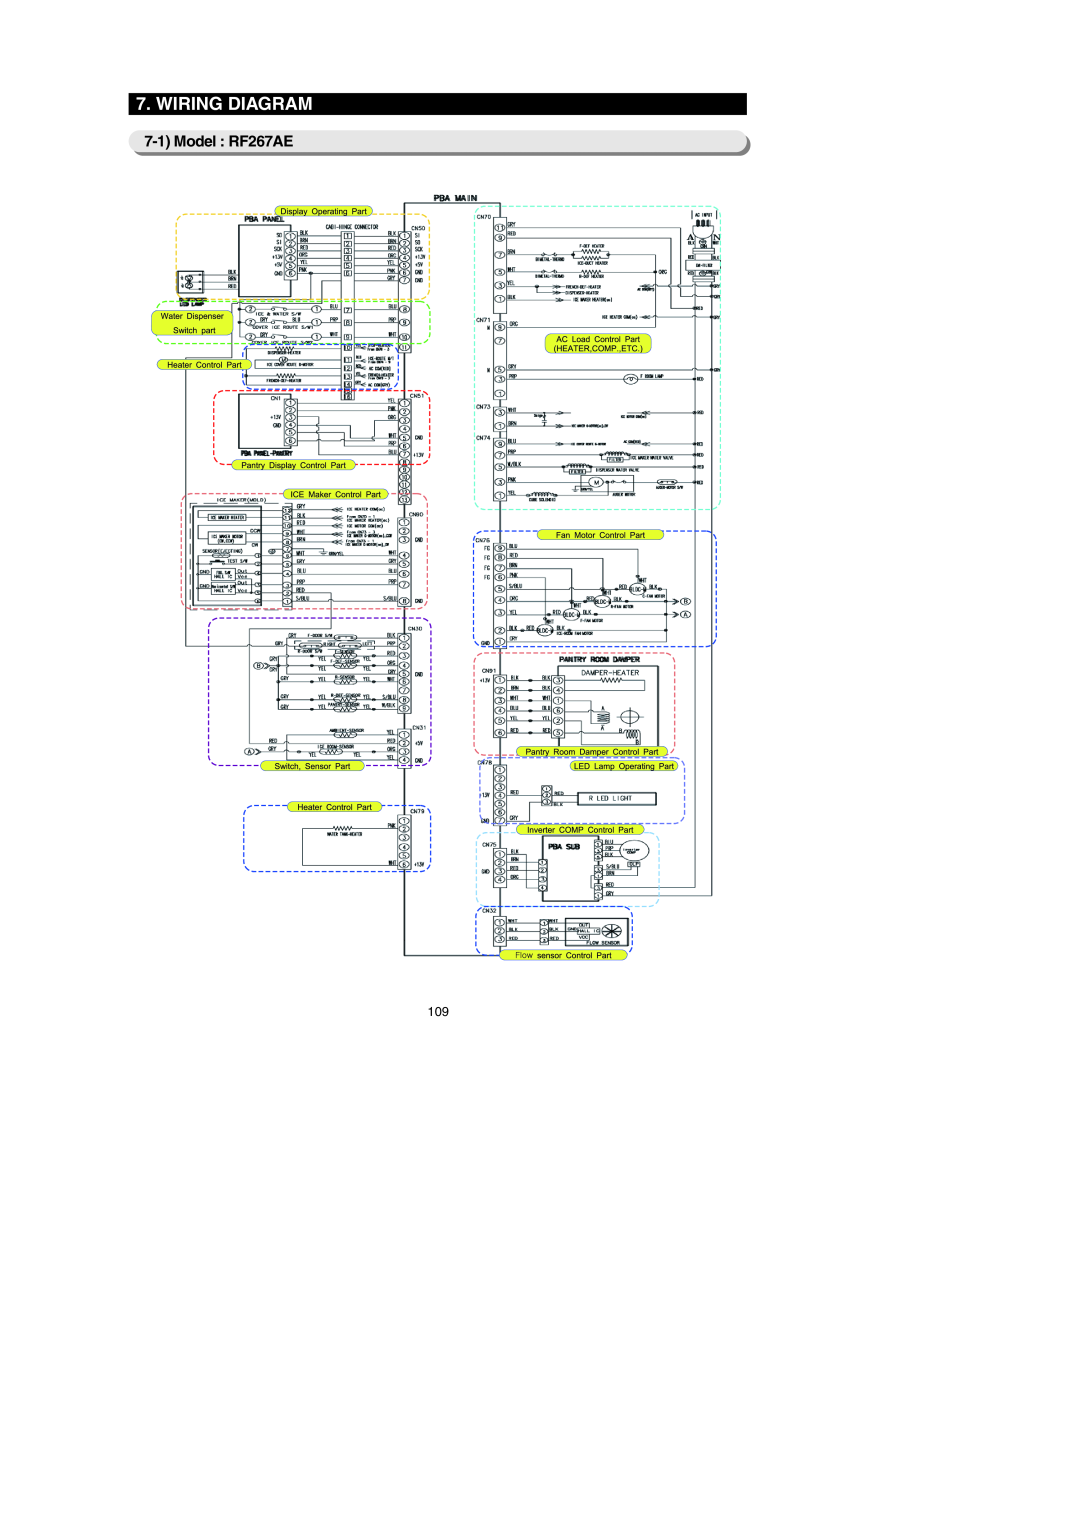 Samsung RF267AEBP, RF267AE**, RF26XAERS, RF26XAEPN, RF26XAE**, RF26XAEXAA, RF267AERS, RF267AEWP Wiring Diagram, Model RF267AE 